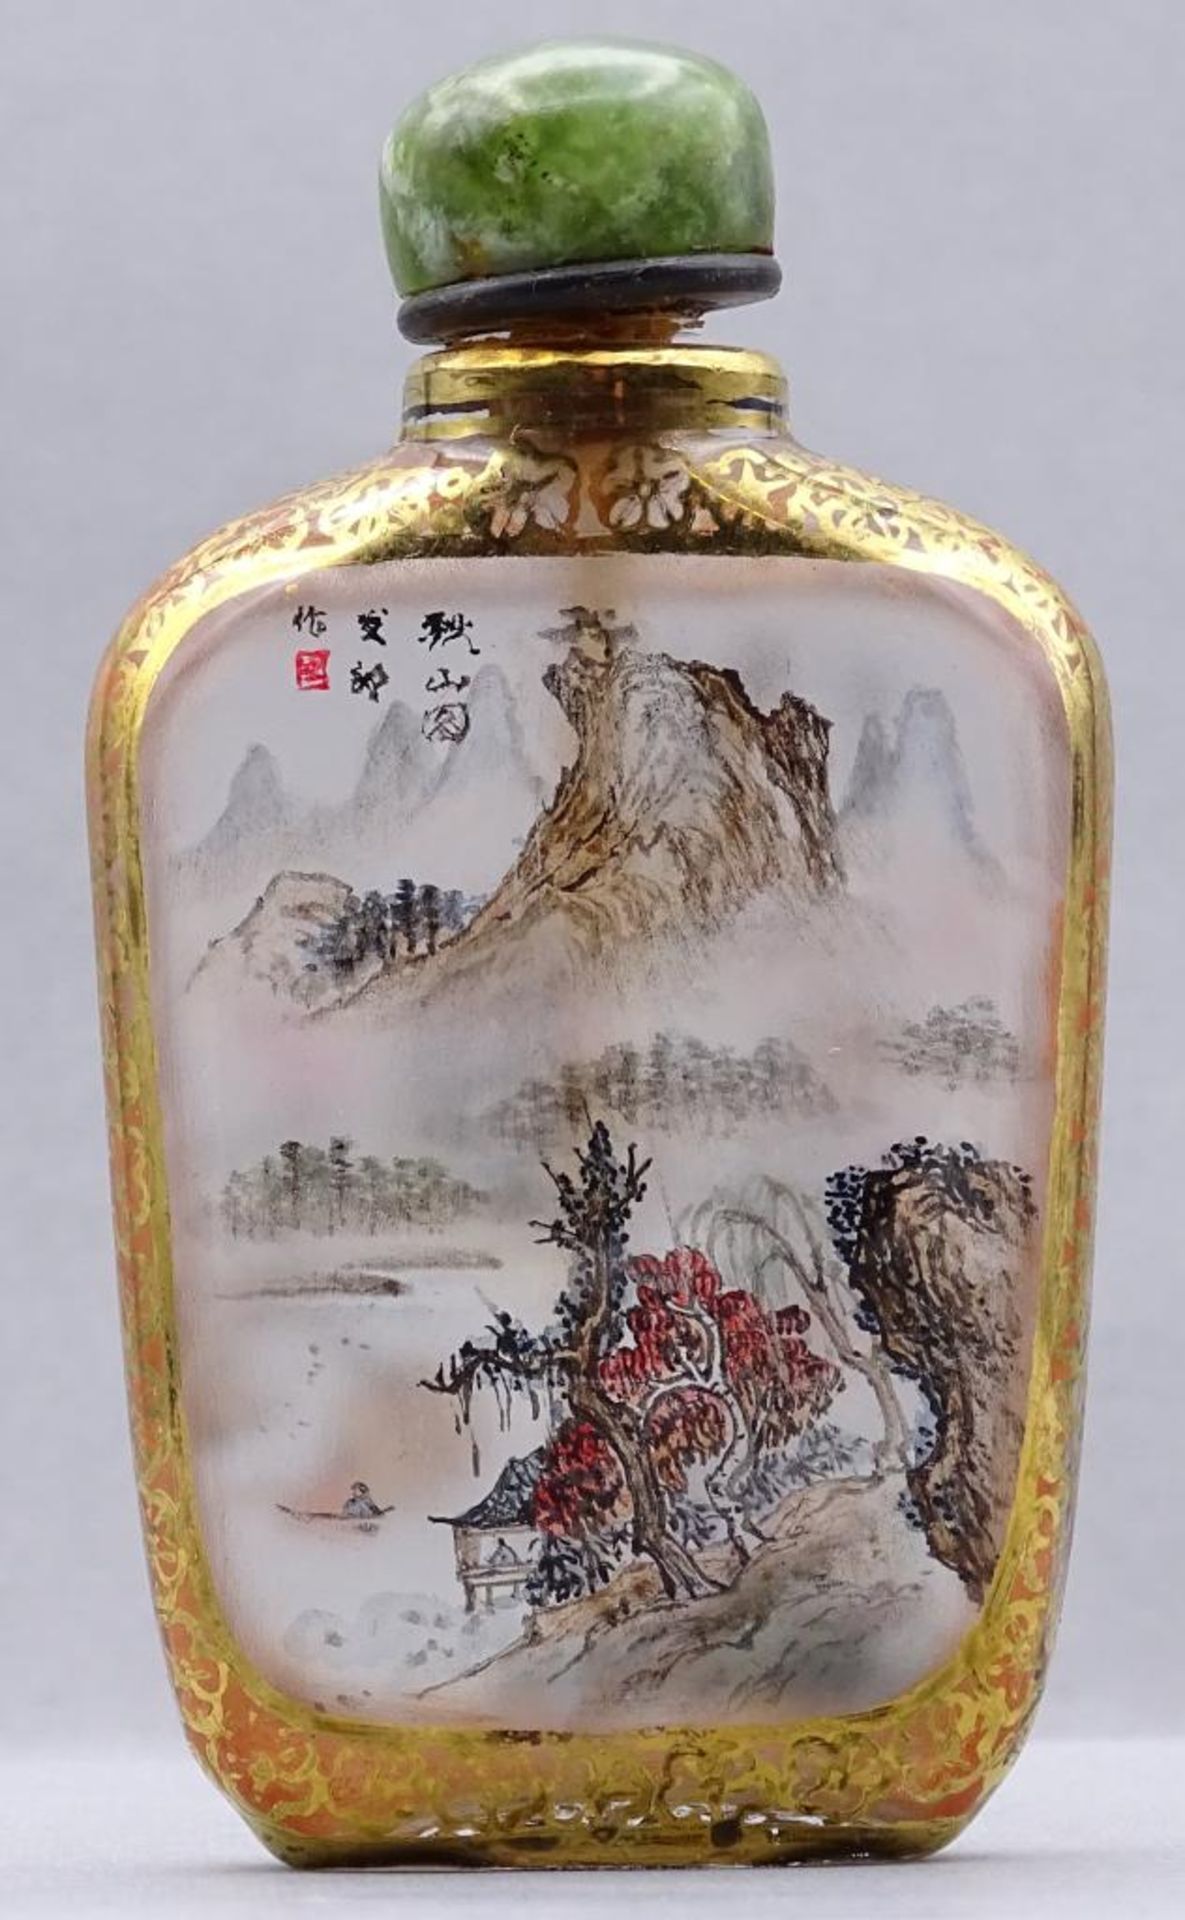 Snuff Bottle, Zwischenglasmalerei mit Goldflitter, H-8 cm- - -22.61 % buyer's premium on the